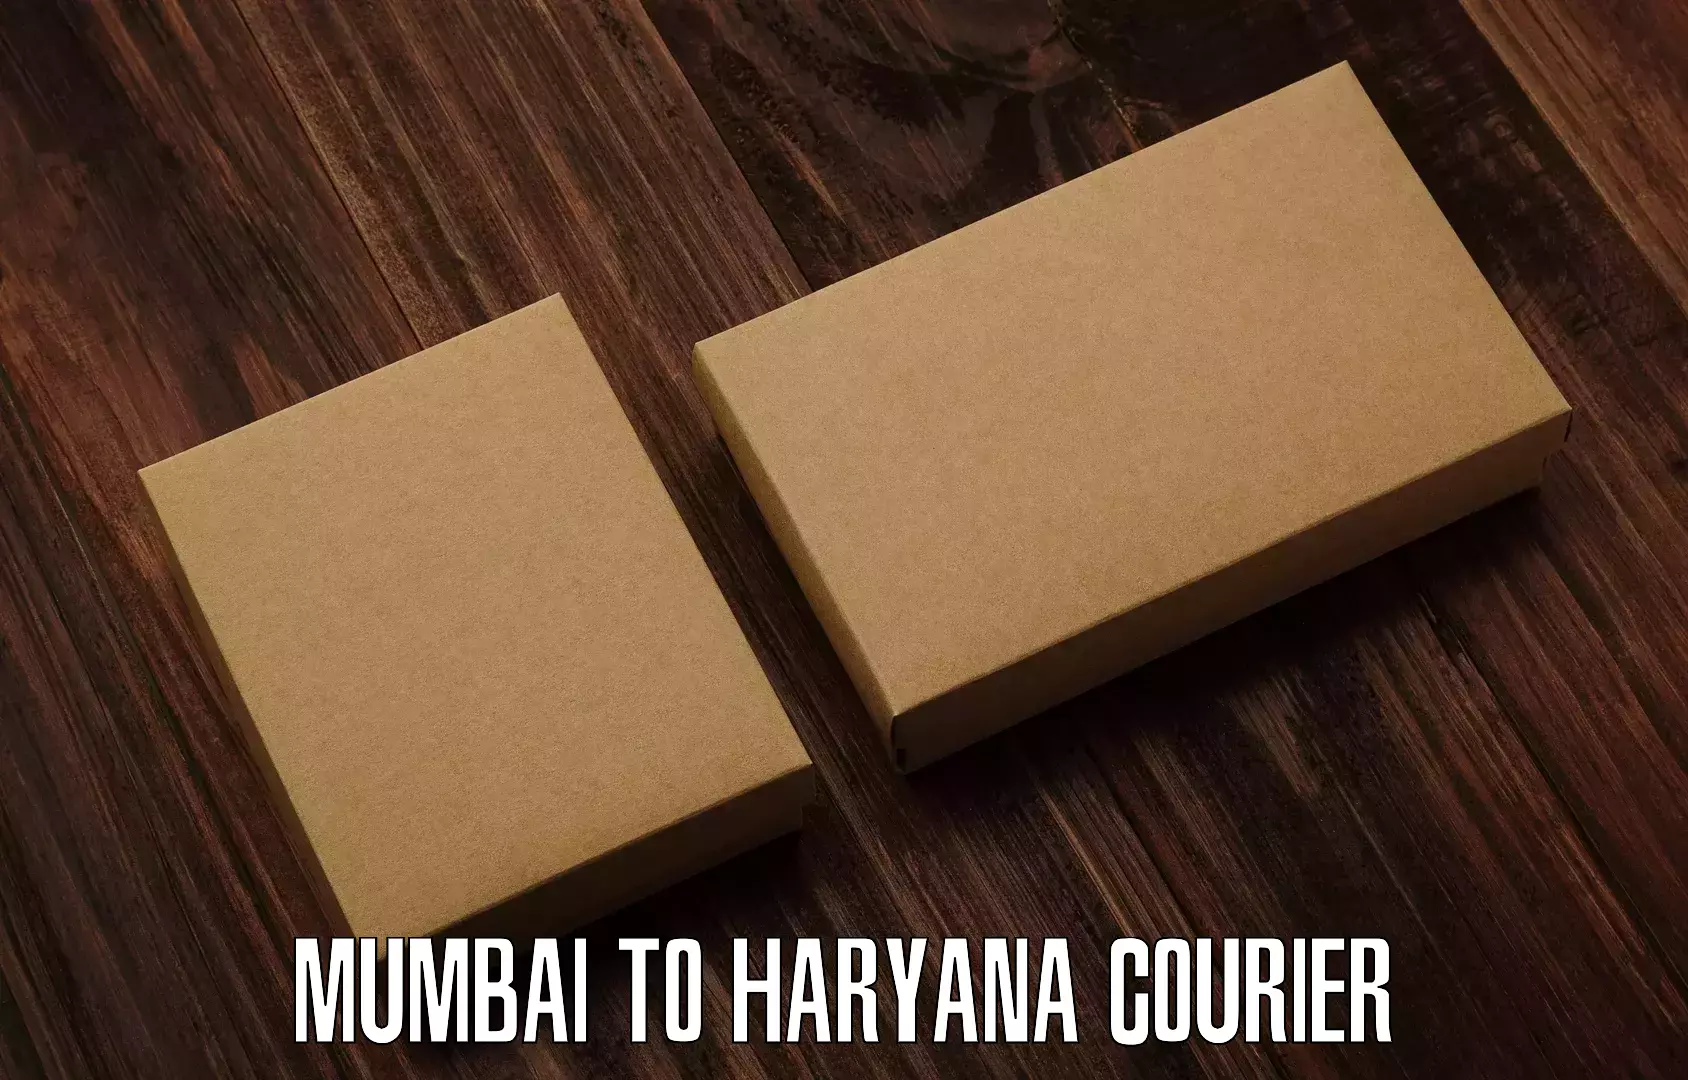 Courier service comparison Mumbai to Chirya